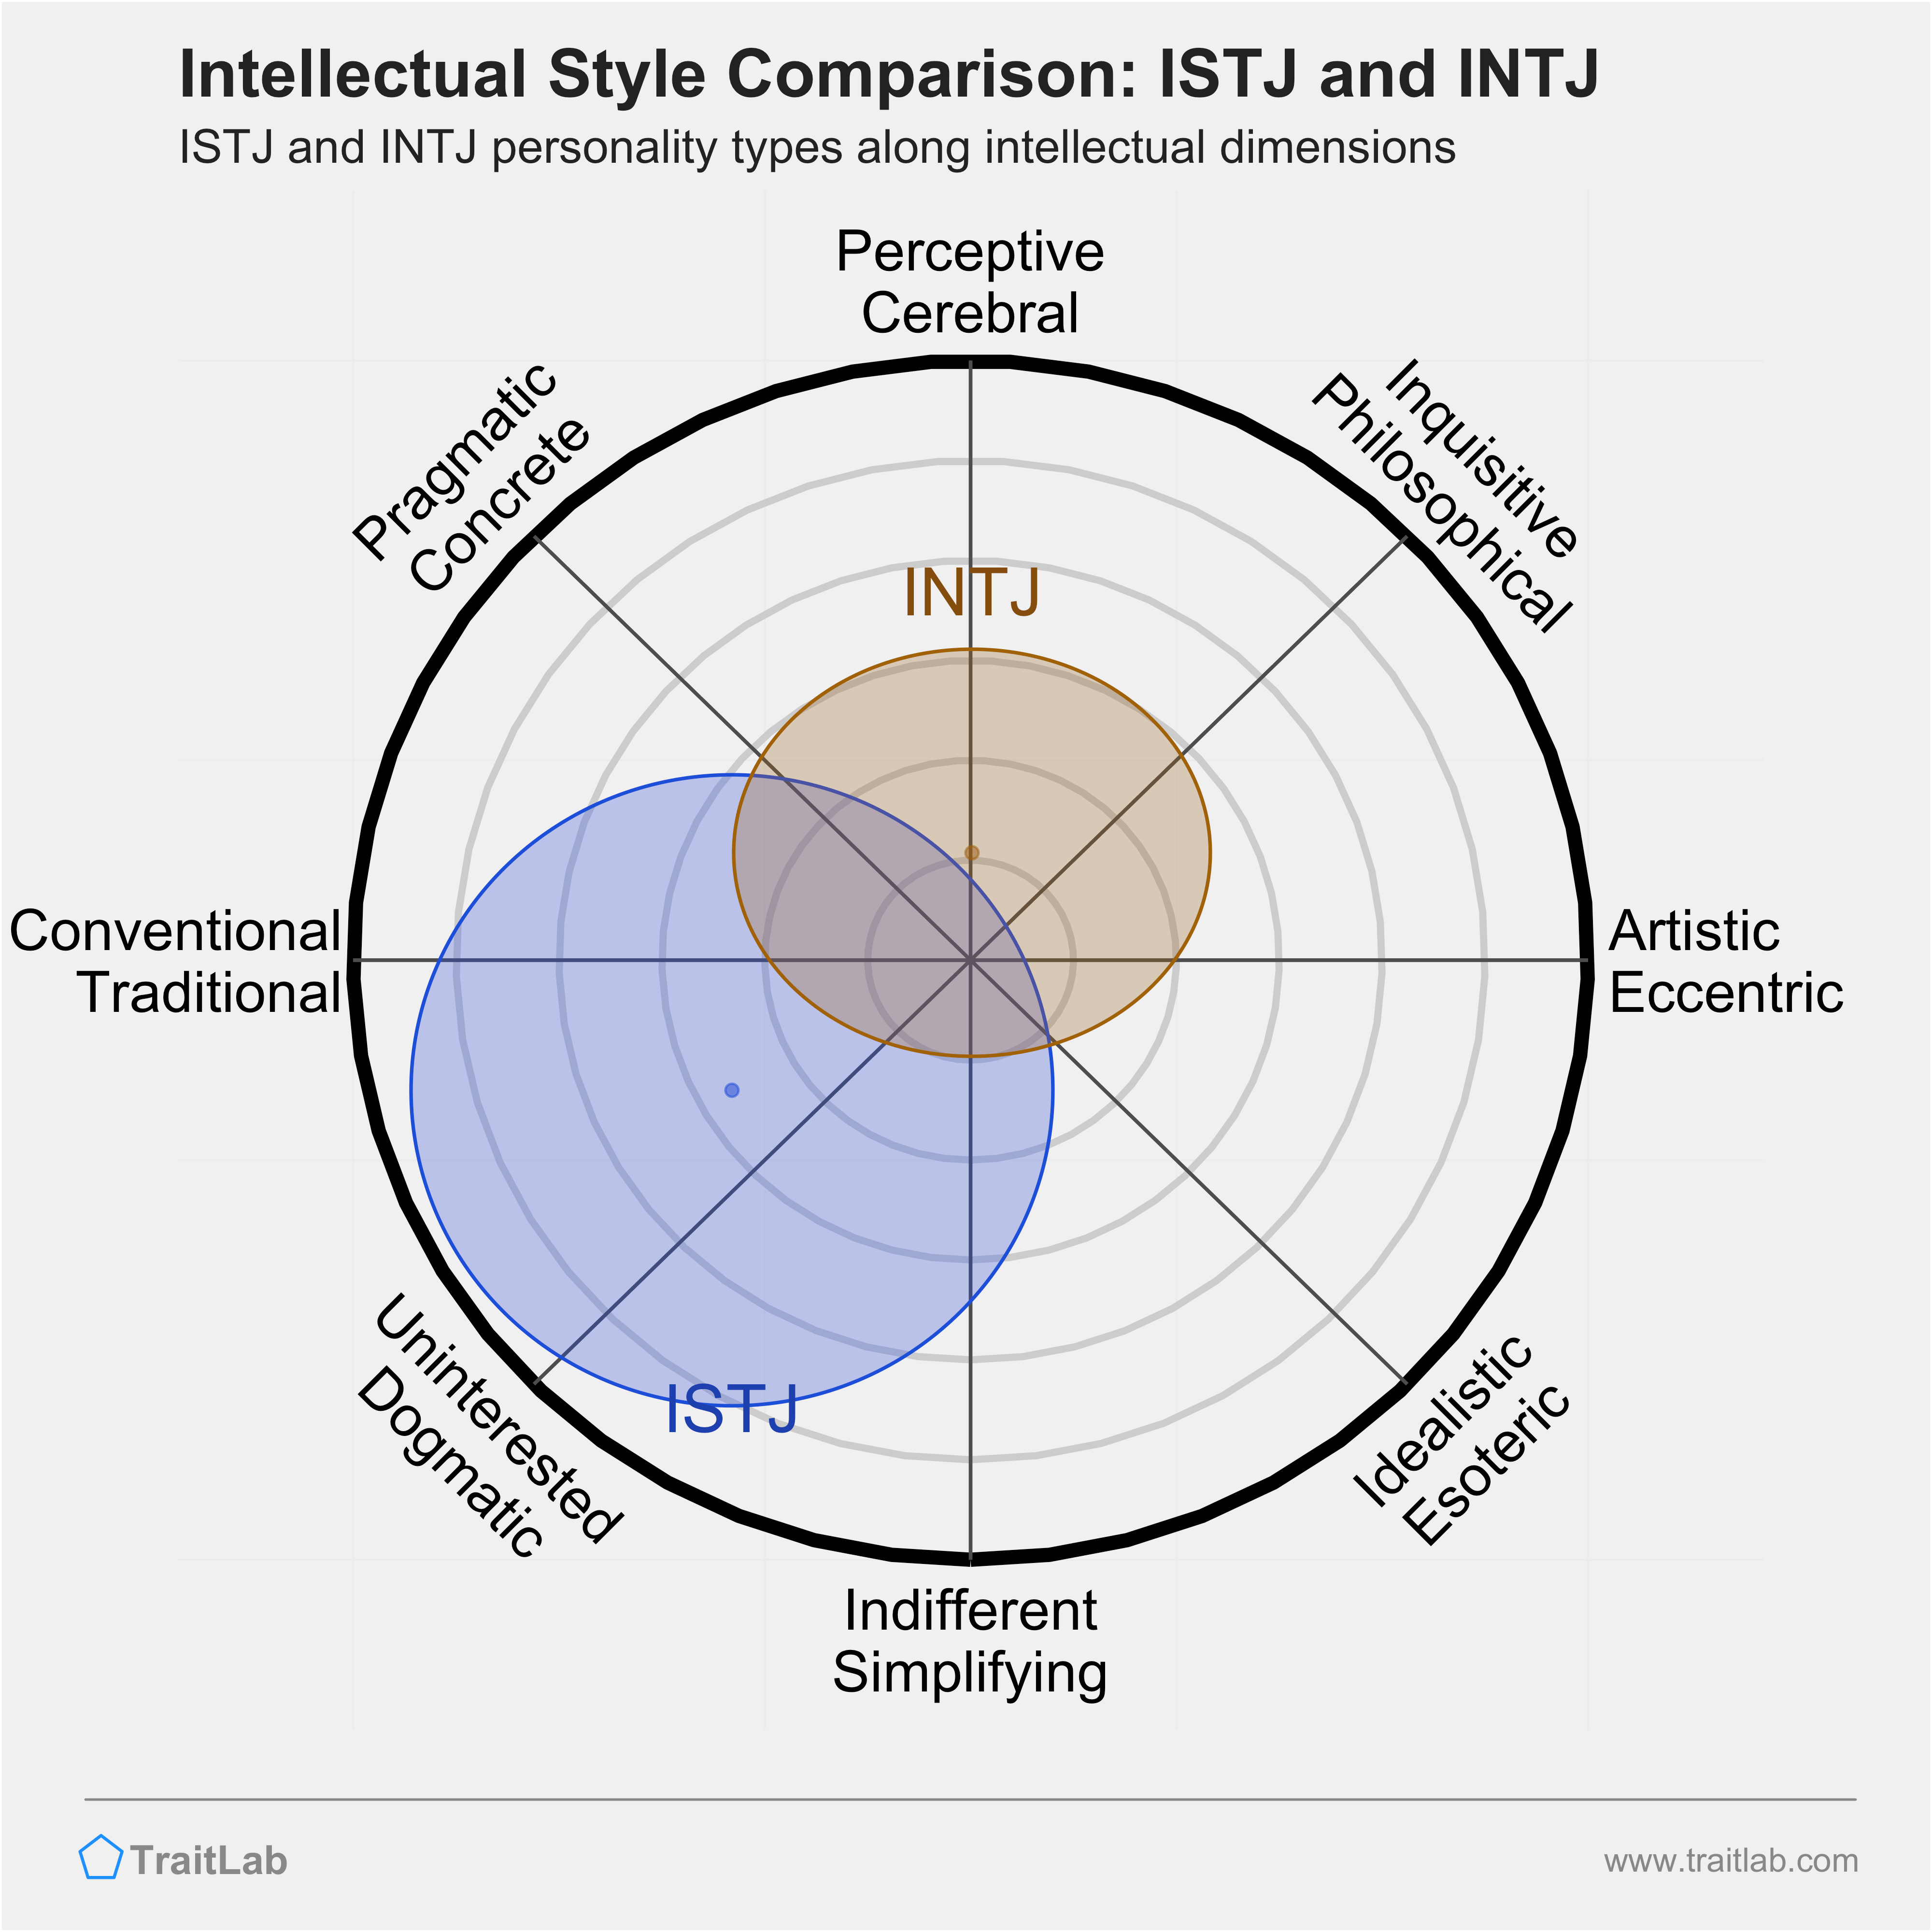 ISTJ and INTJ comparison across intellectual dimensions